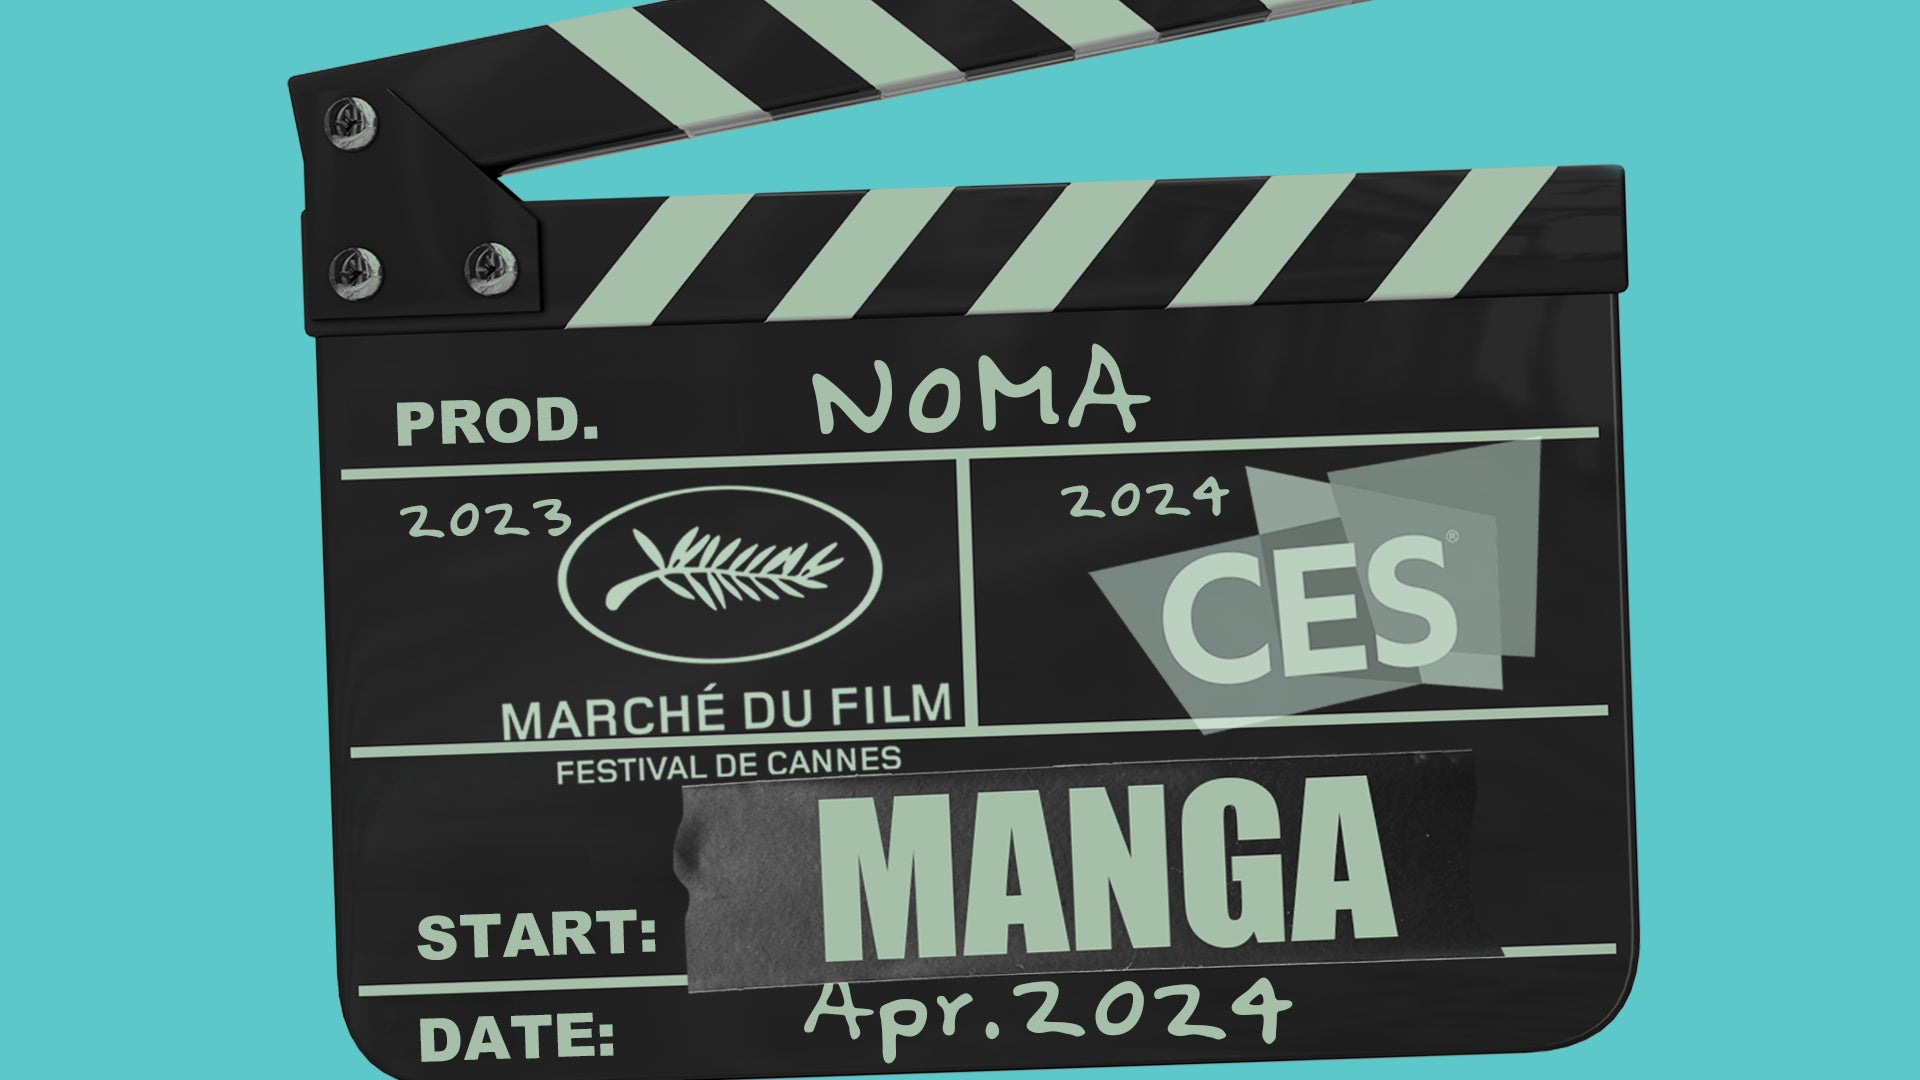 NOMA、国際アニメーターらとともにスタジオ創設。カンヌ映画祭やCESにて入賞したMANGA事業を本格始動